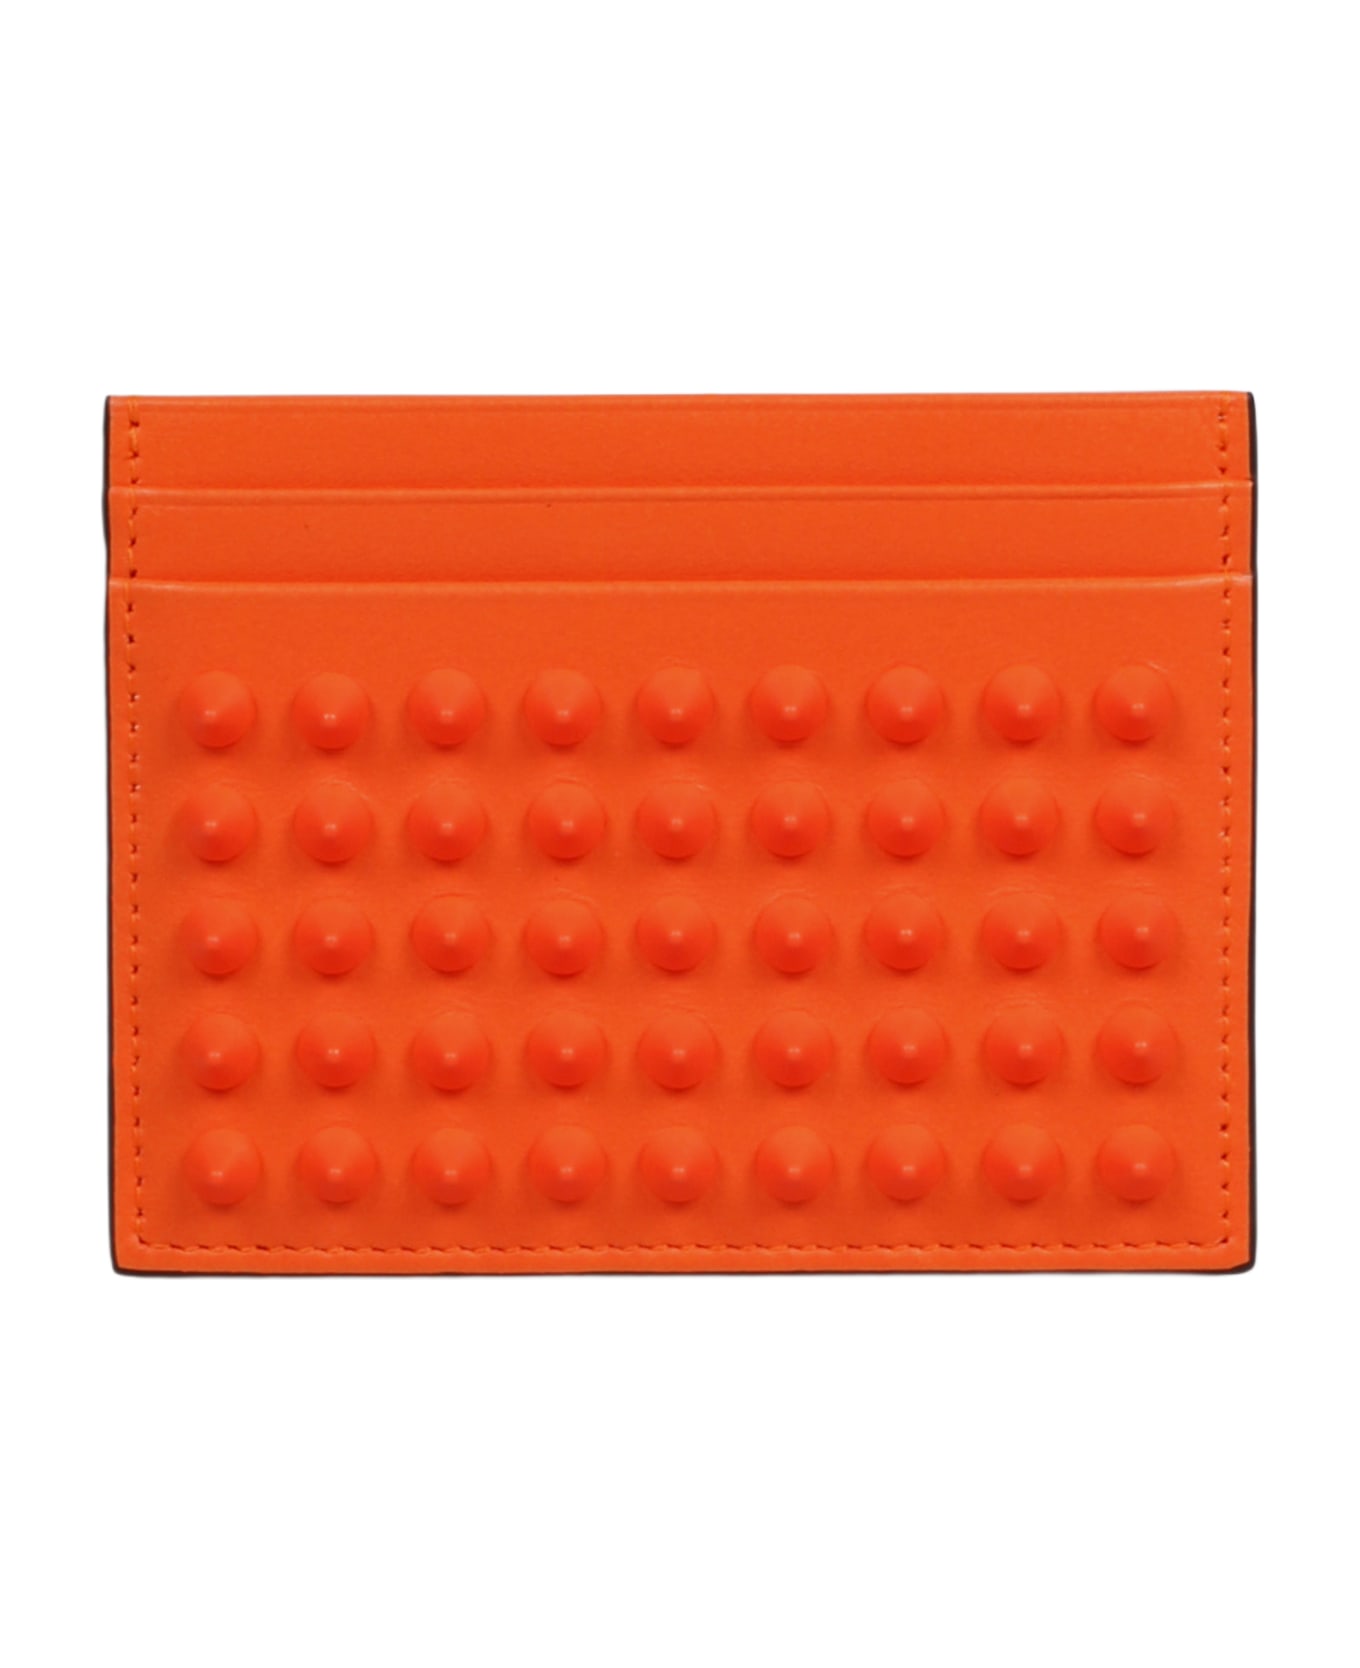 Christian Louboutin Kios Cardholder - Yellow & Orange 財布